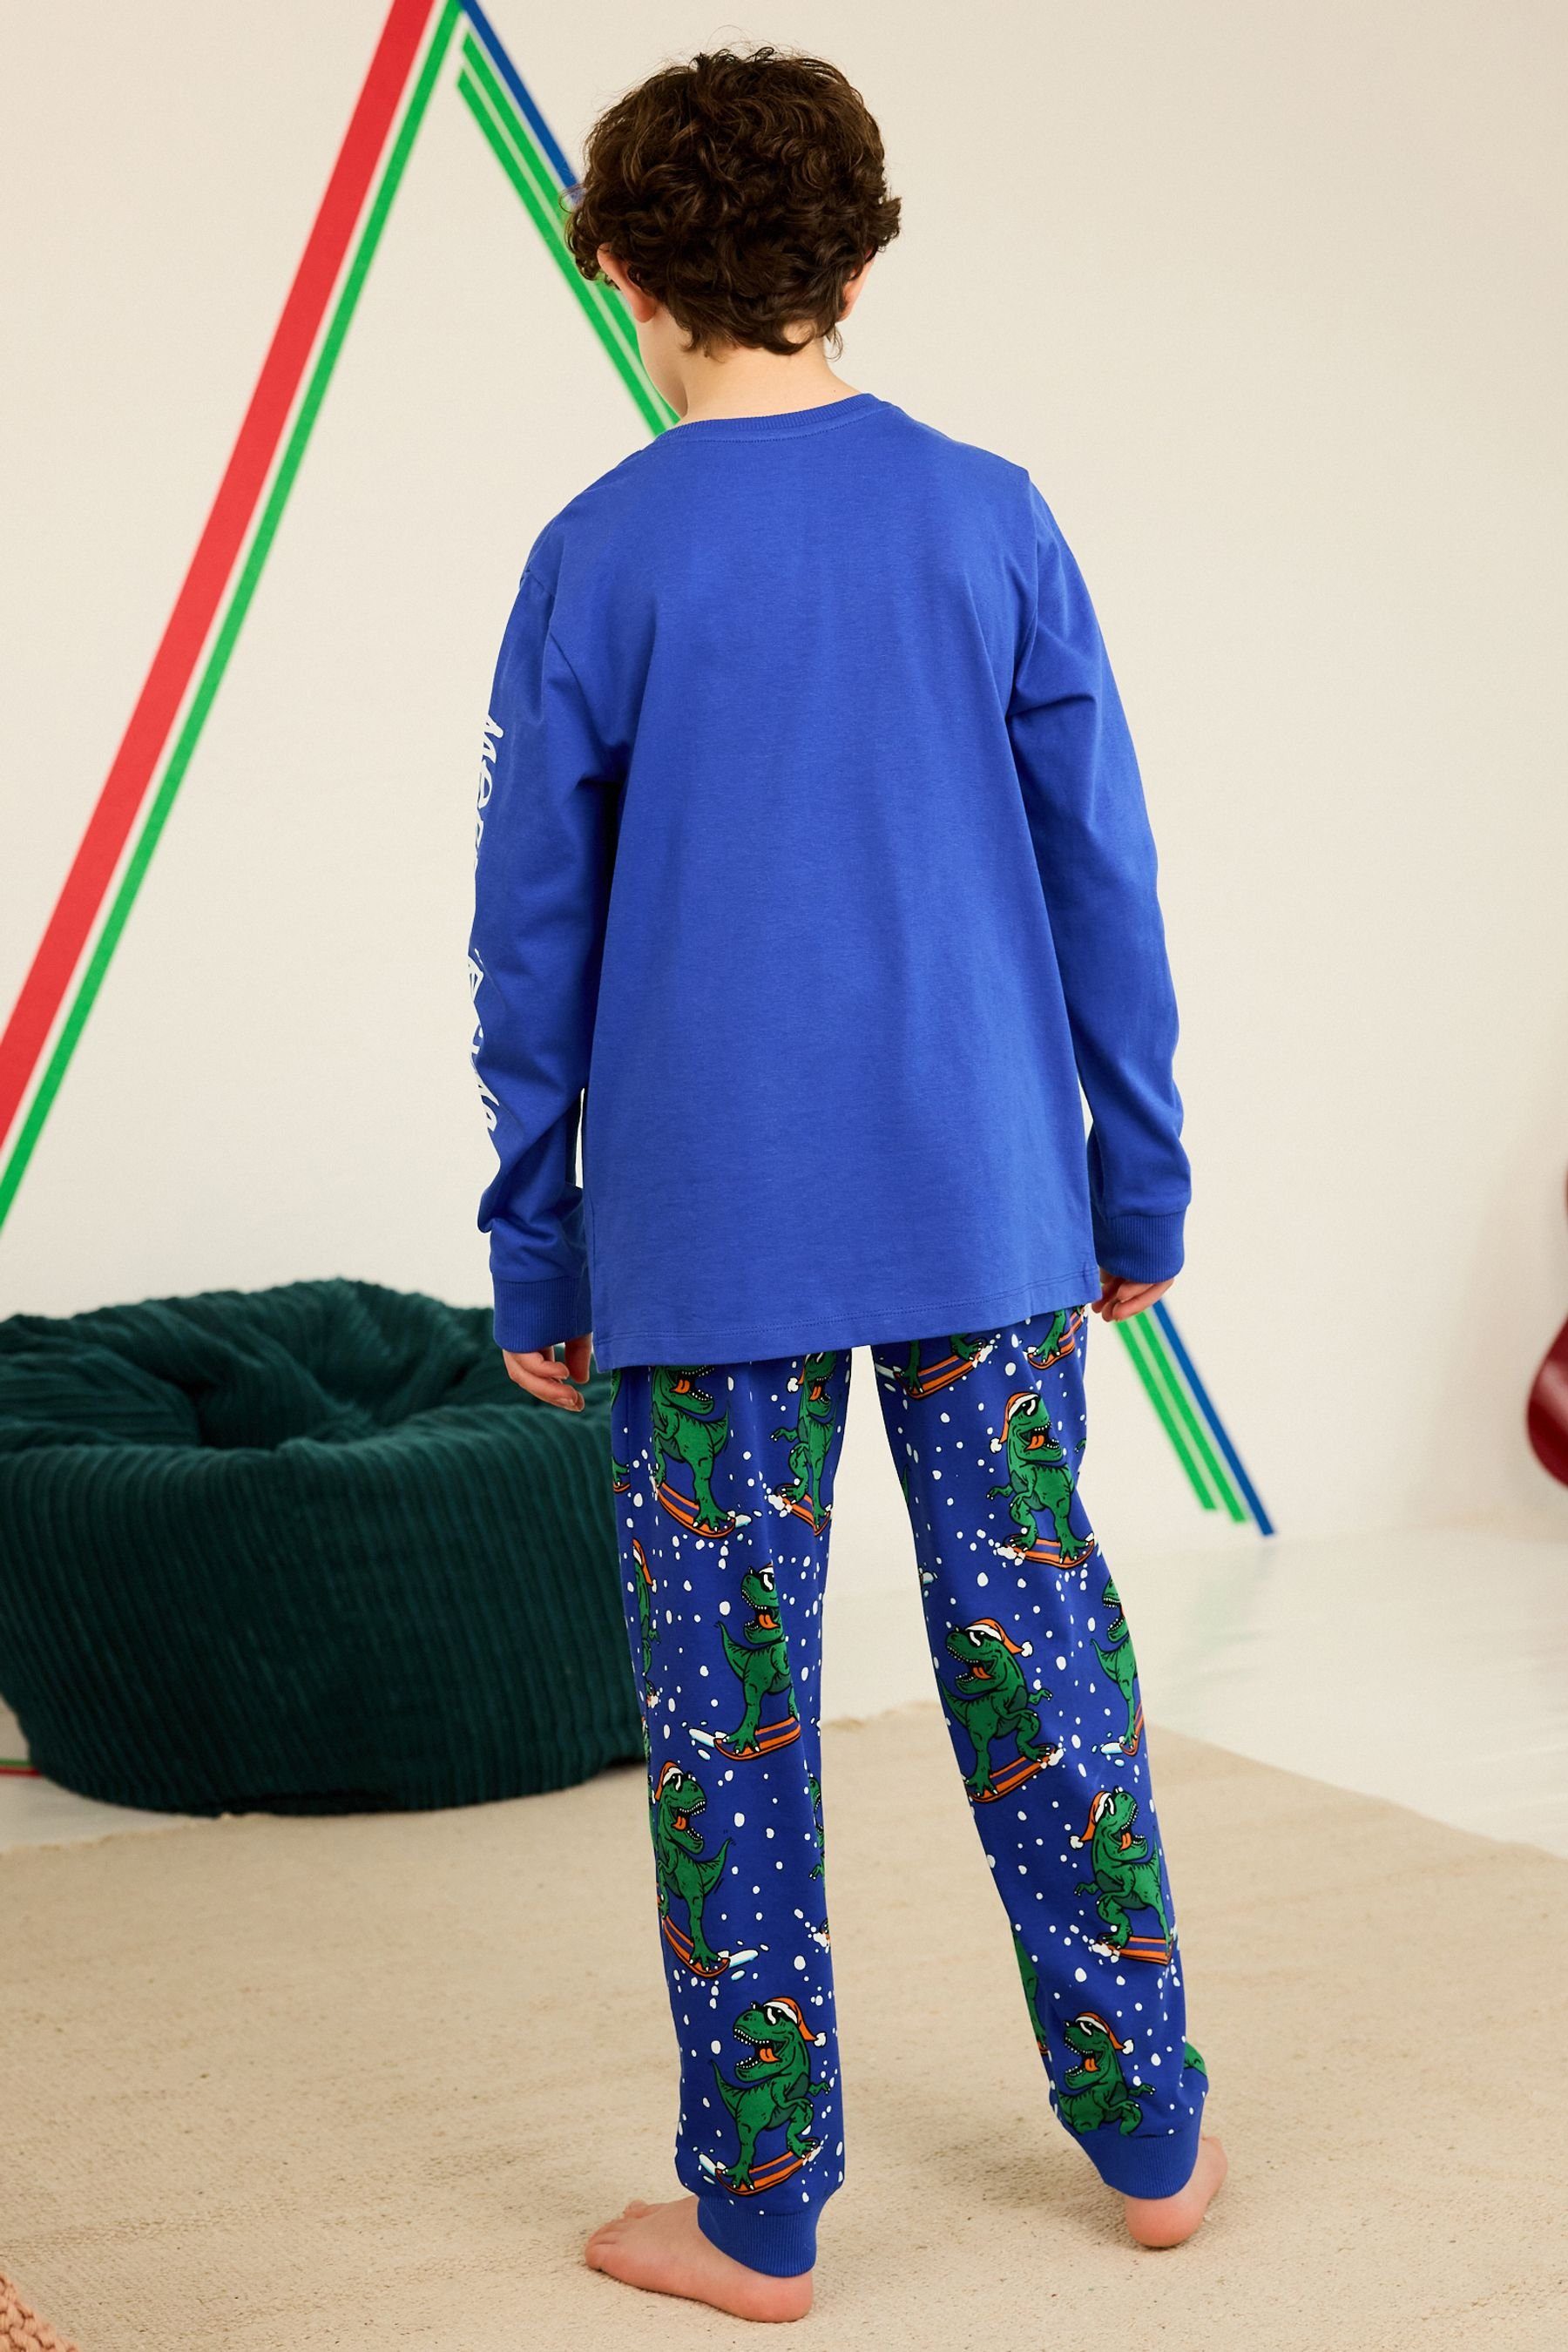 Next Pyjama Weihnachtlicher (2 Pyjama Dinosaur Navy Blue tlg)